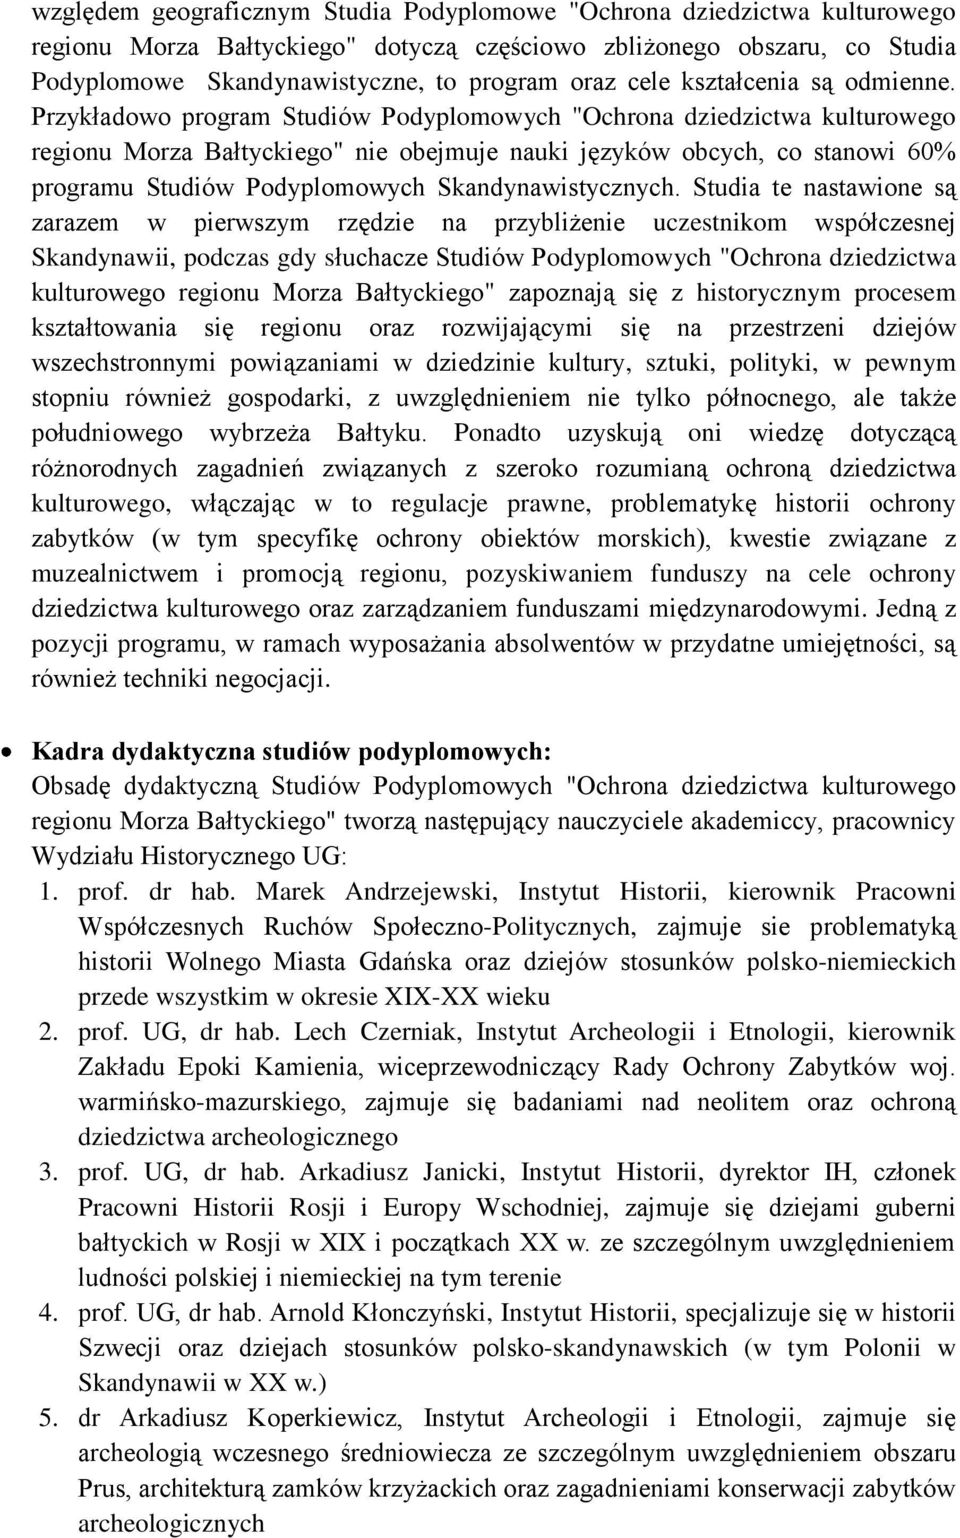 Przykładowo program Studiów Podyplomowych "Ochrona dziedzictwa kulturowego regionu Morza Bałtyckiego" nie obejmuje nauki języków obcych, co stanowi 60% programu Studiów Podyplomowych